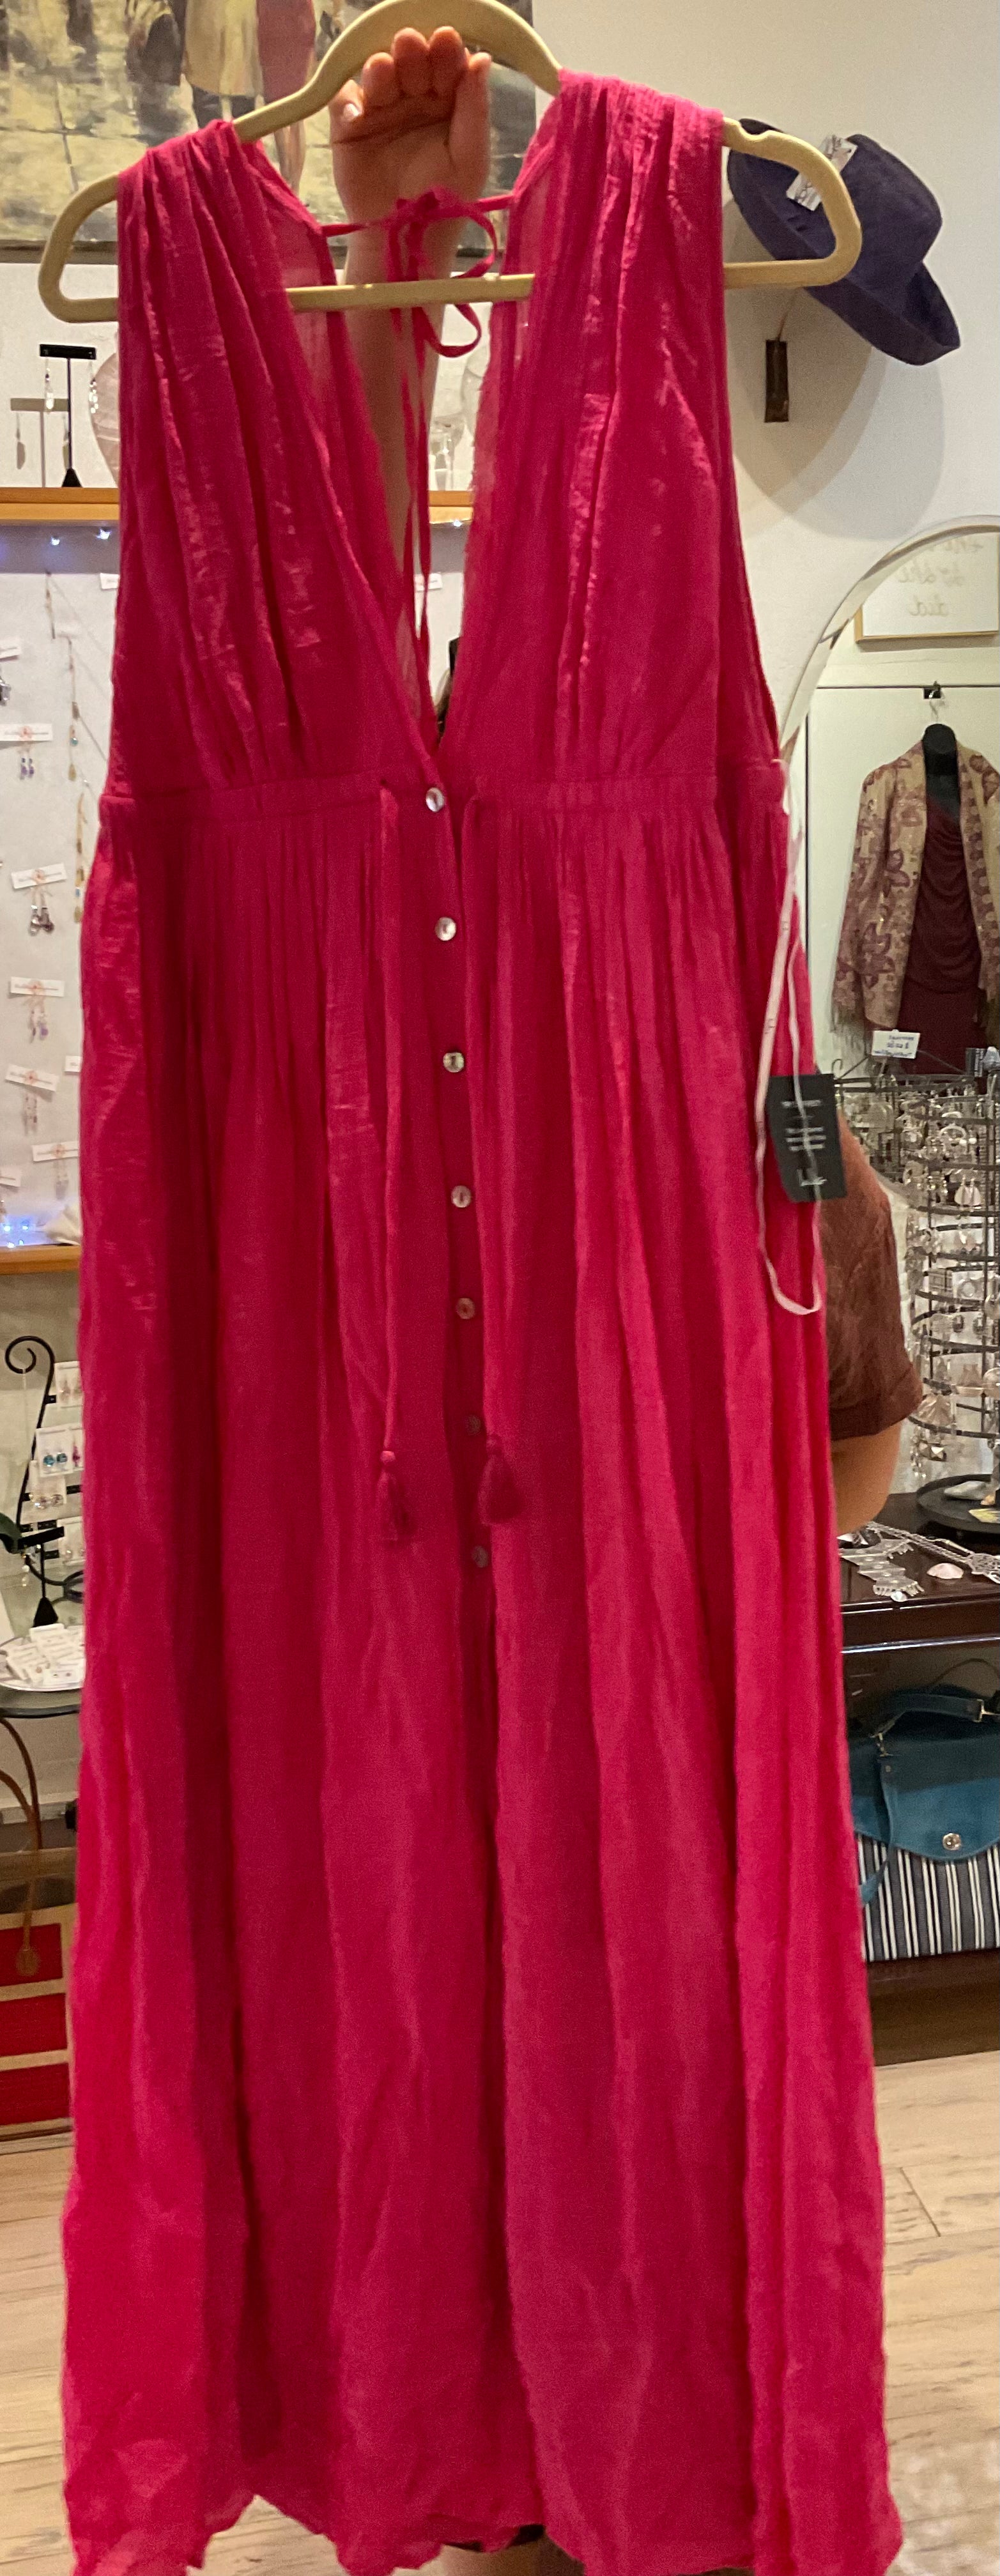 Hot pink rayon dress